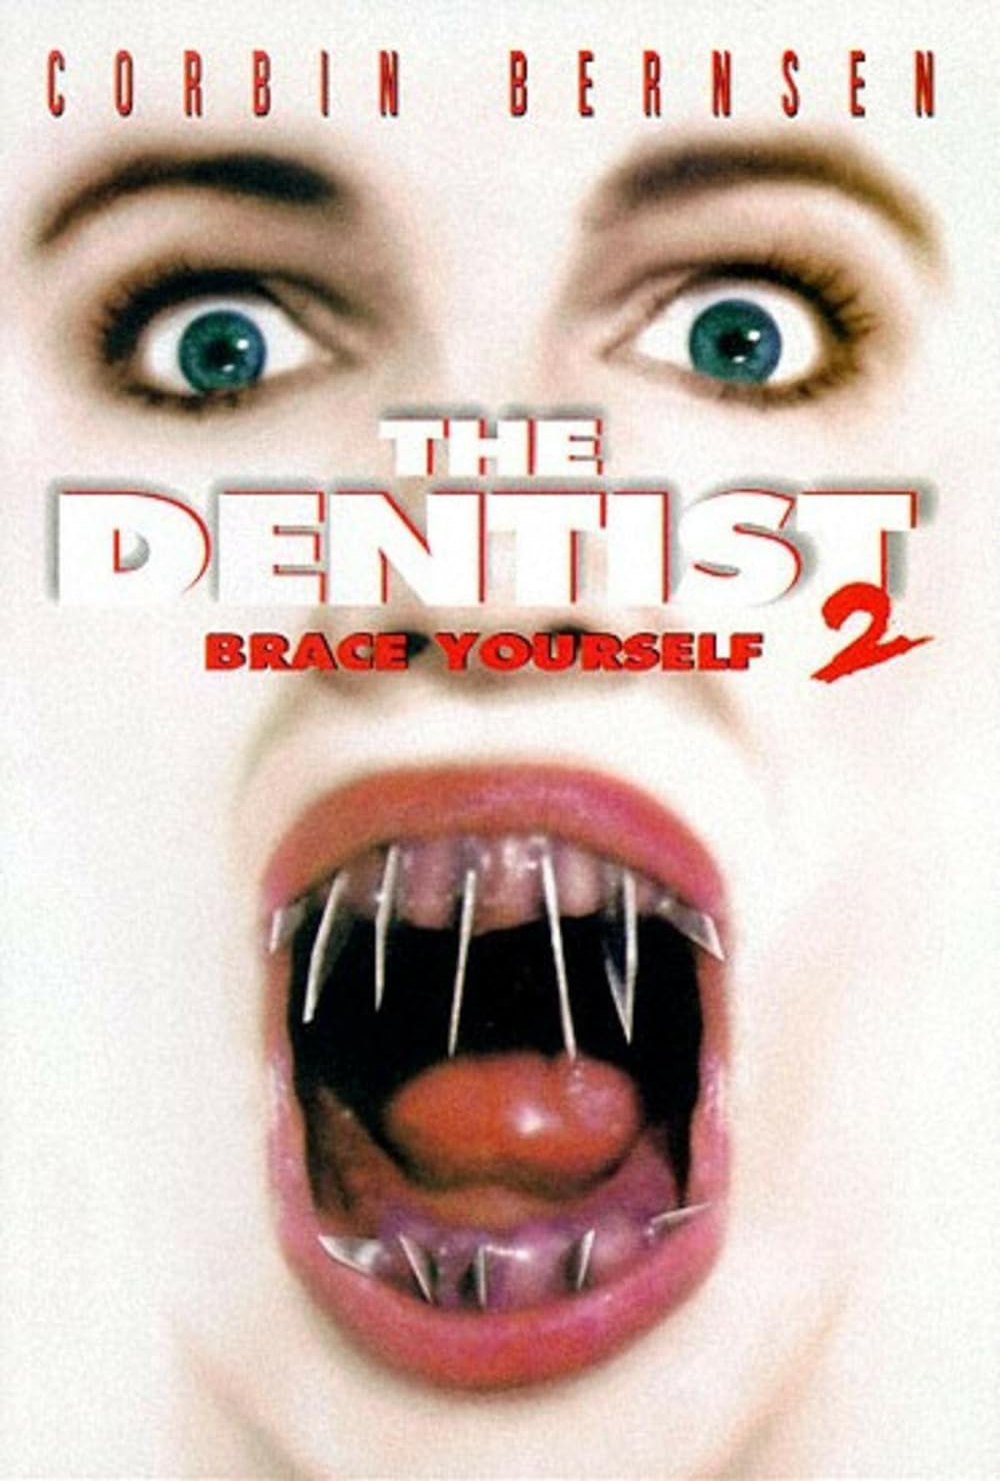 The Dentitst 2